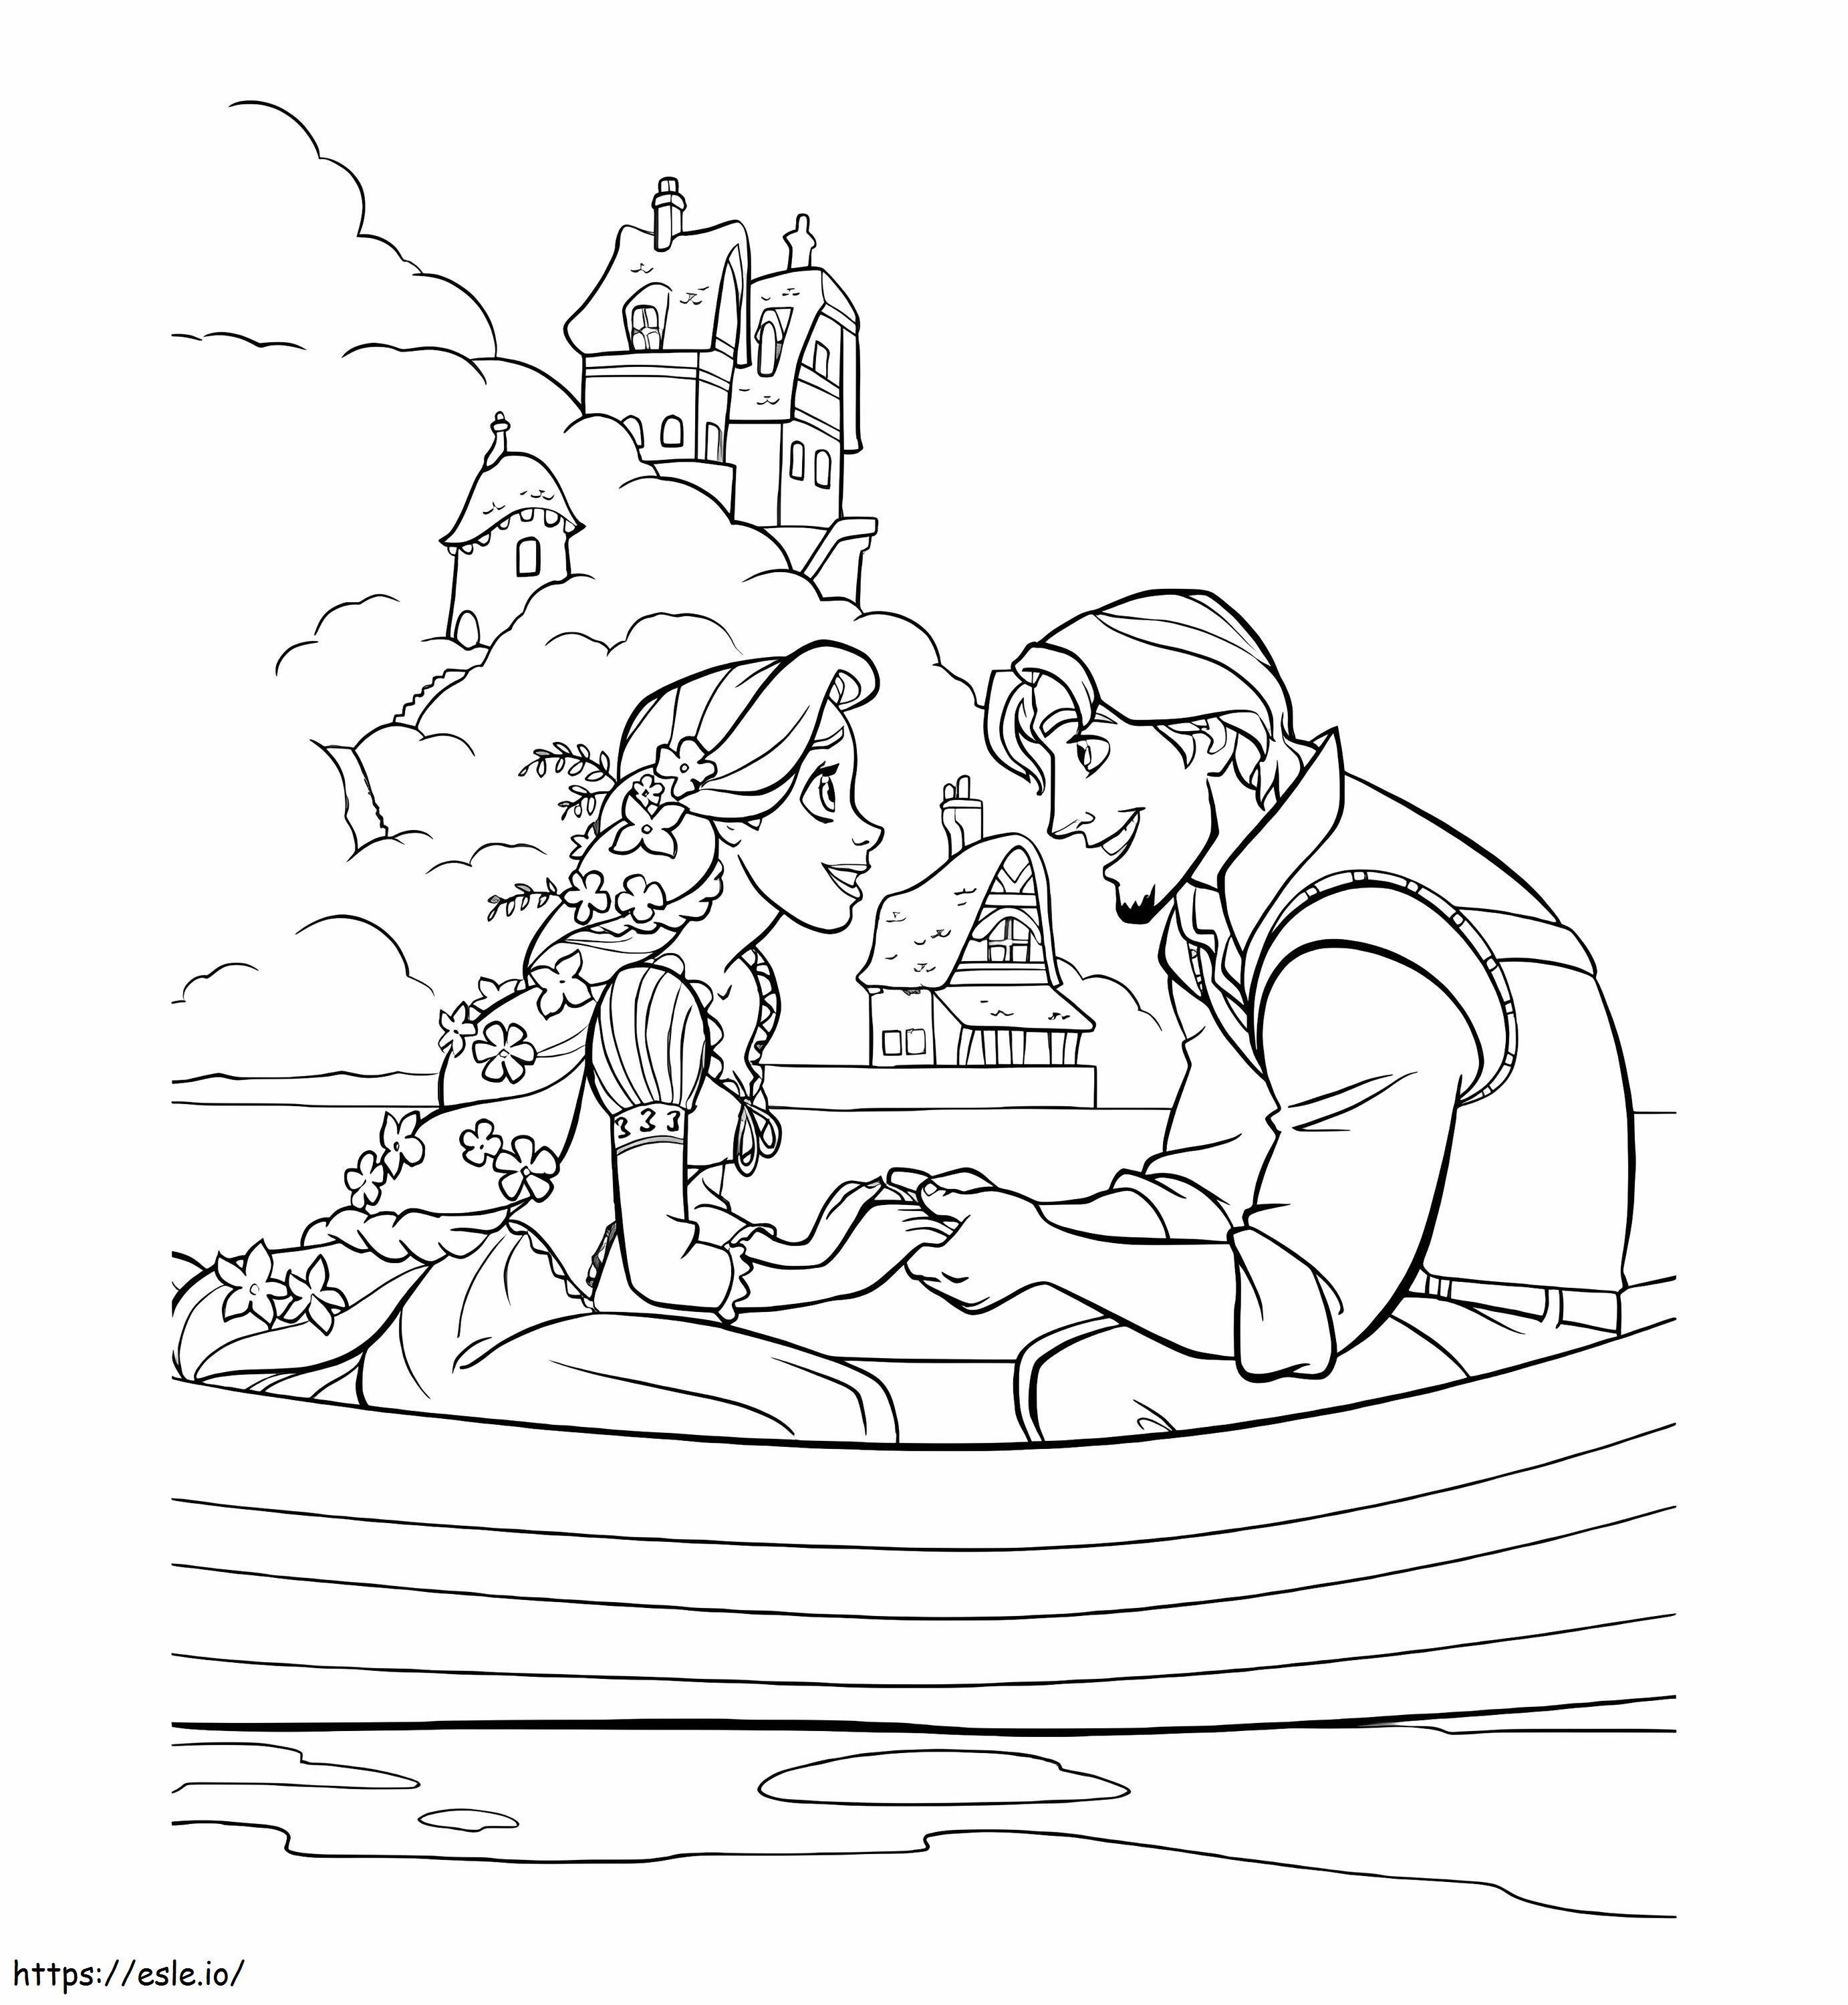 Roszpunka i Flynn siedzą na łodzi kolorowanka